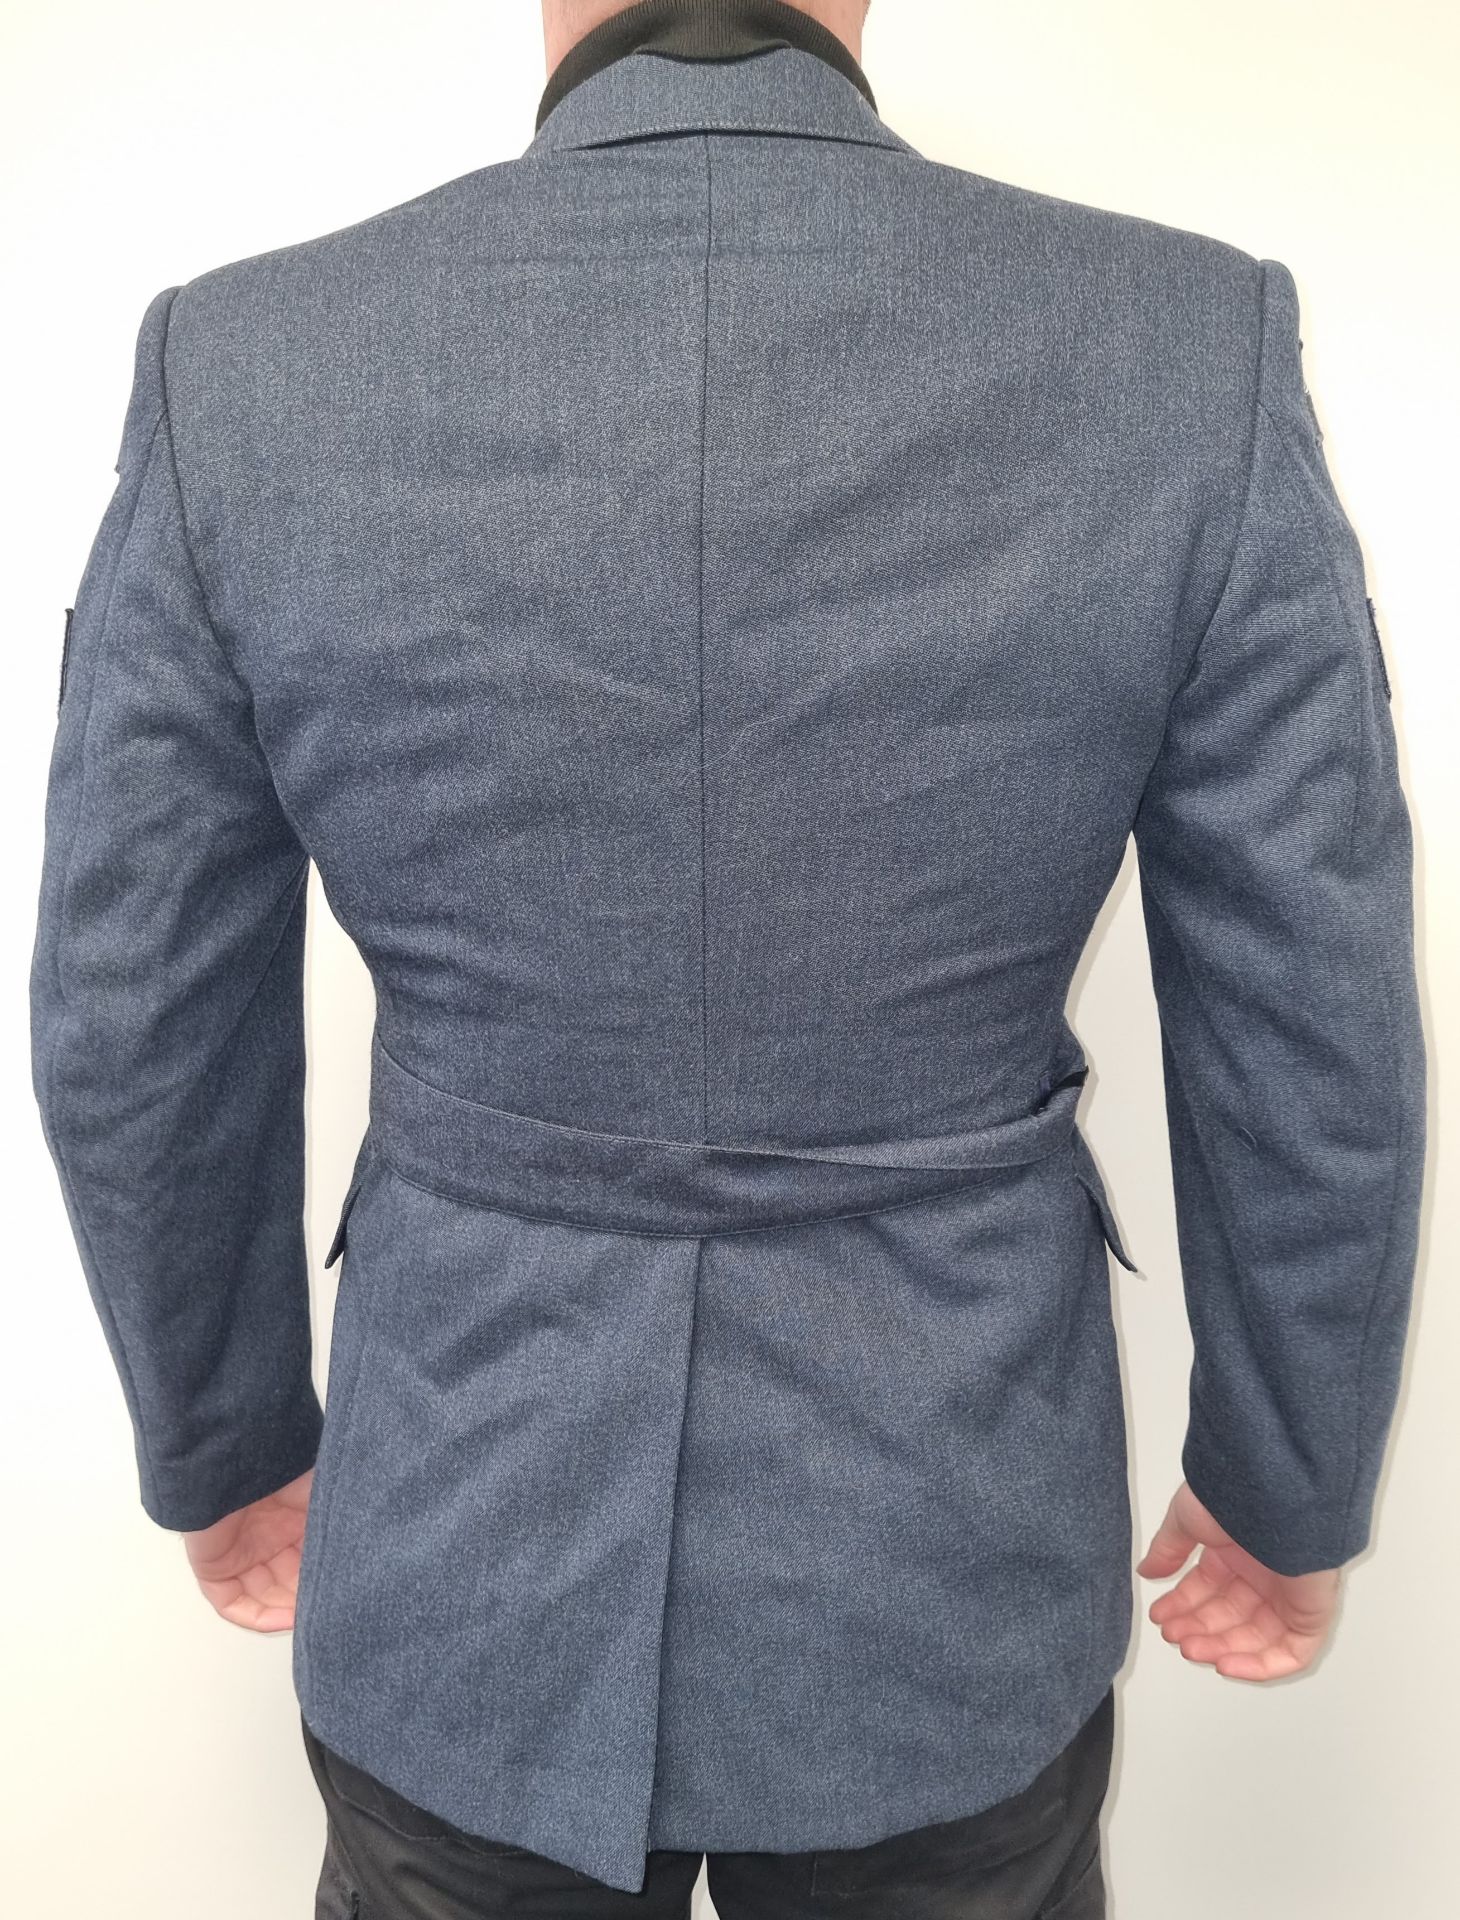 30x British RAF No 1 dress jackets - mixed grades and sizes - Image 2 of 6